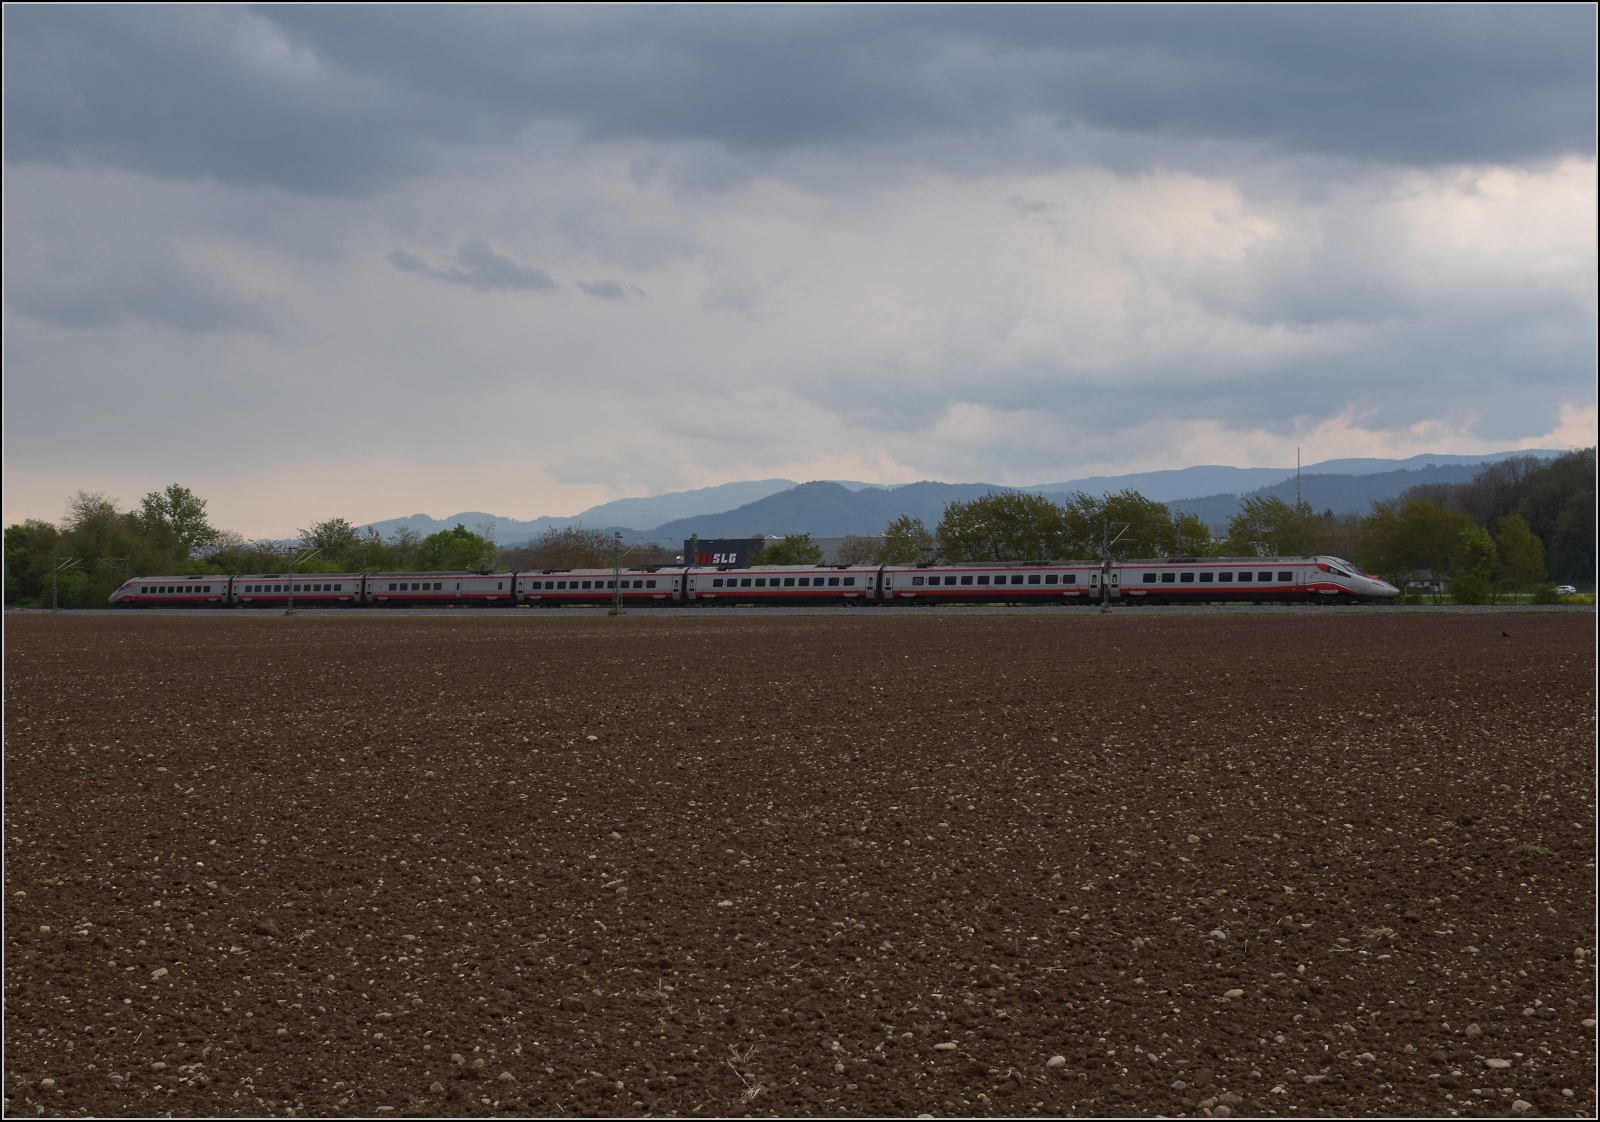 ETR 610 der Tren Italia. Die Nummer der Garnitur blieb unbekannt. Buggingen, April 2022.